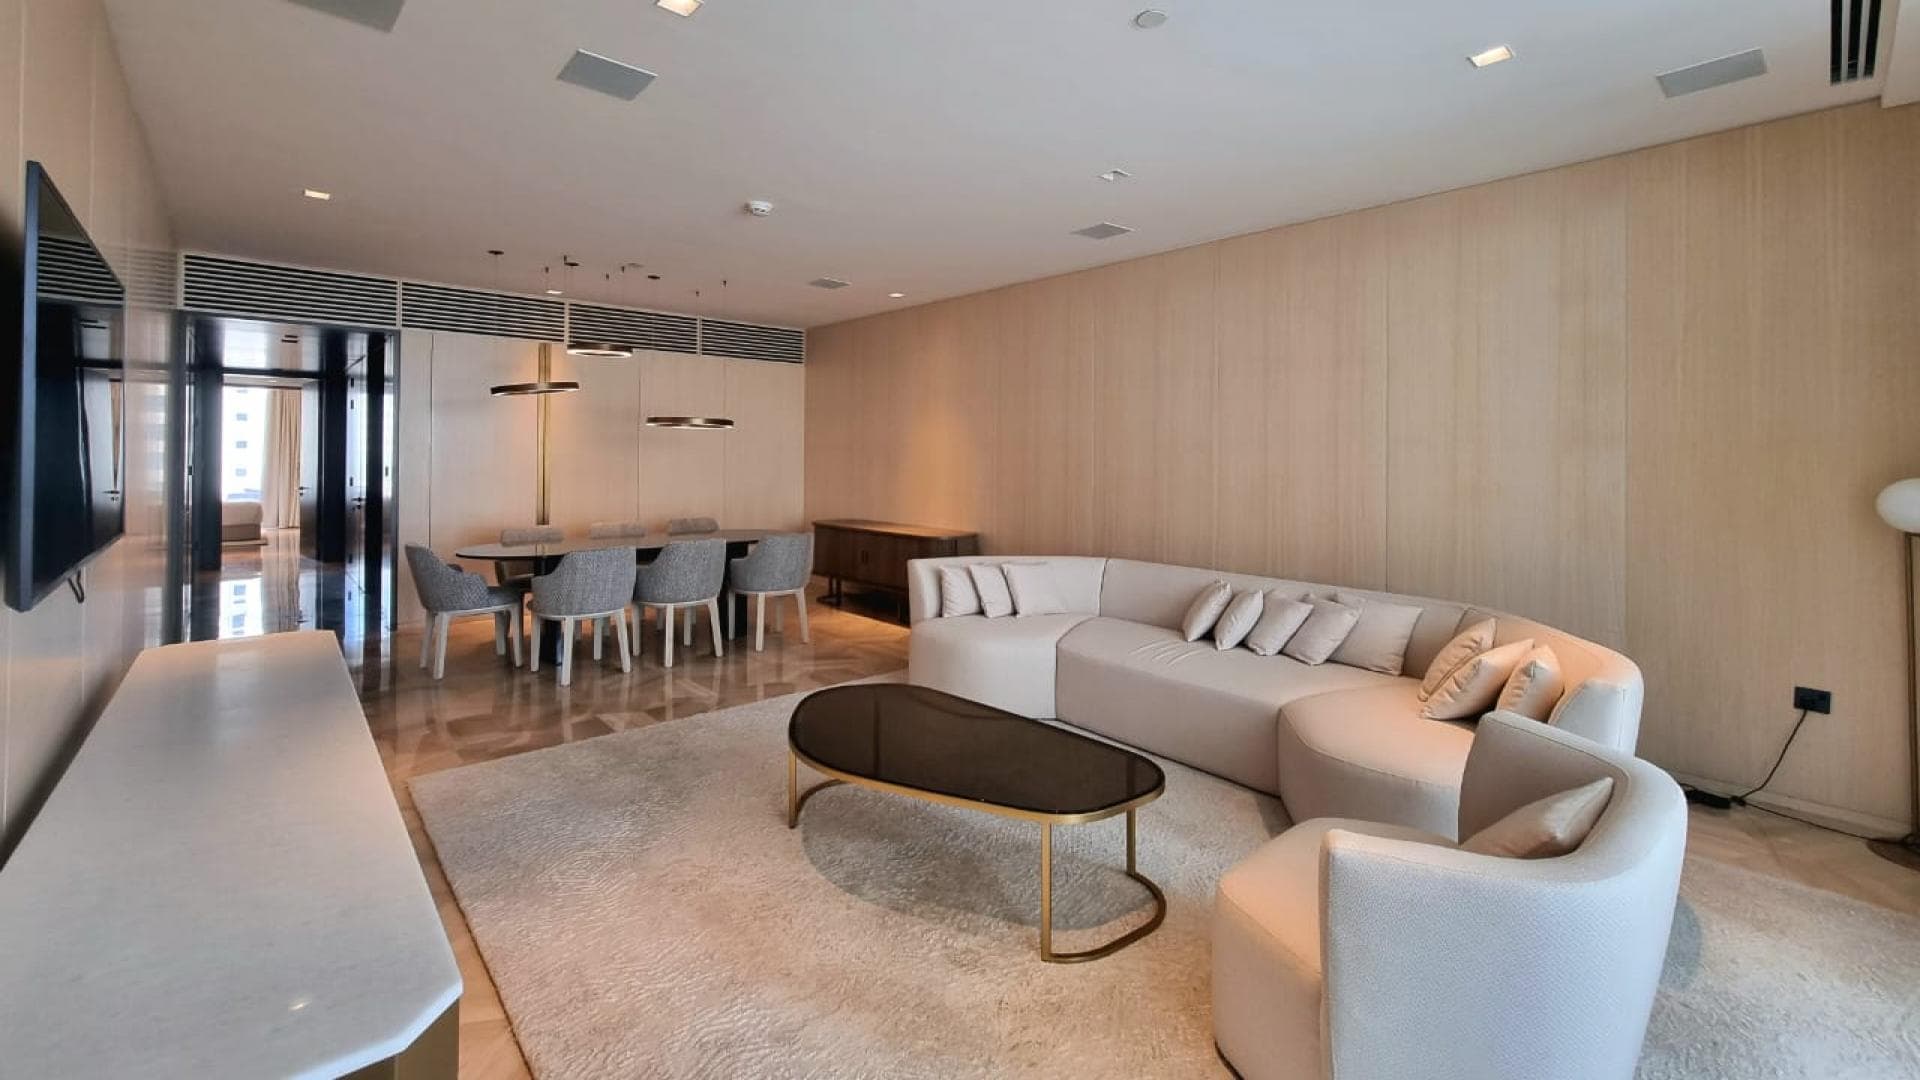 3 Bedroom Apartment For Rent Al Thamam 43 Lp37274 202c5e394f802e0.jpeg